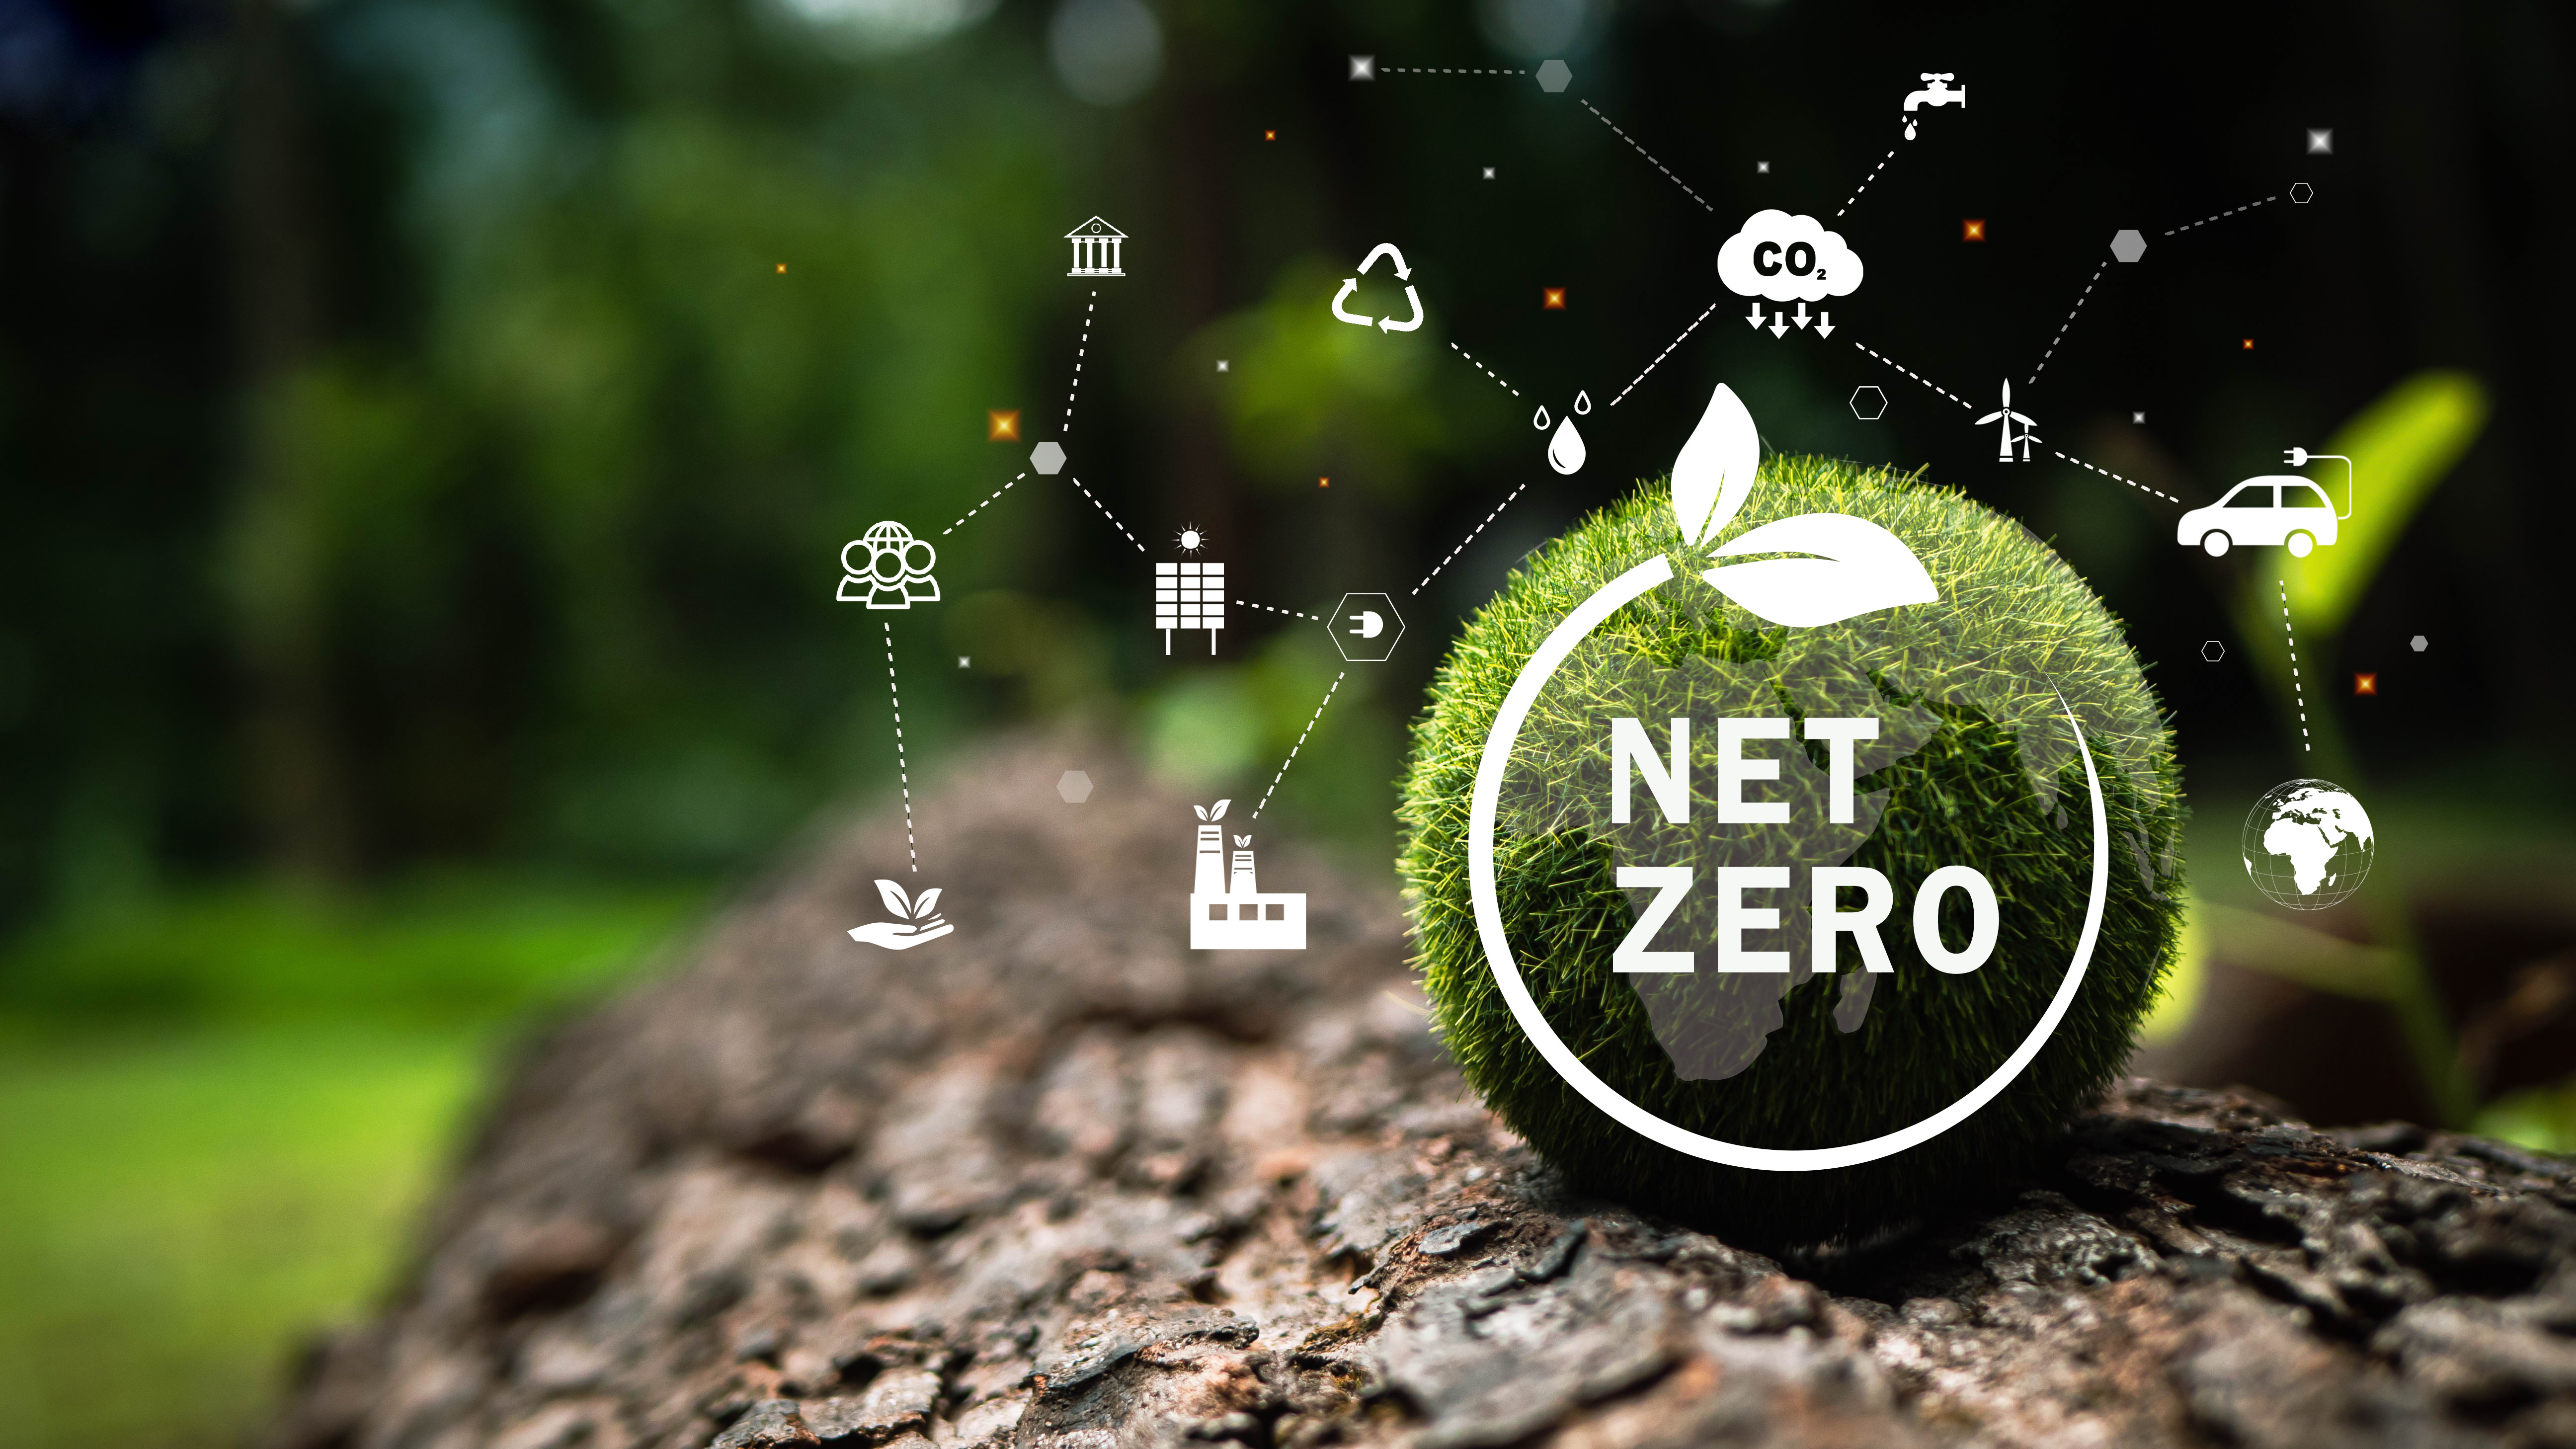 Net zero collaboration under strain